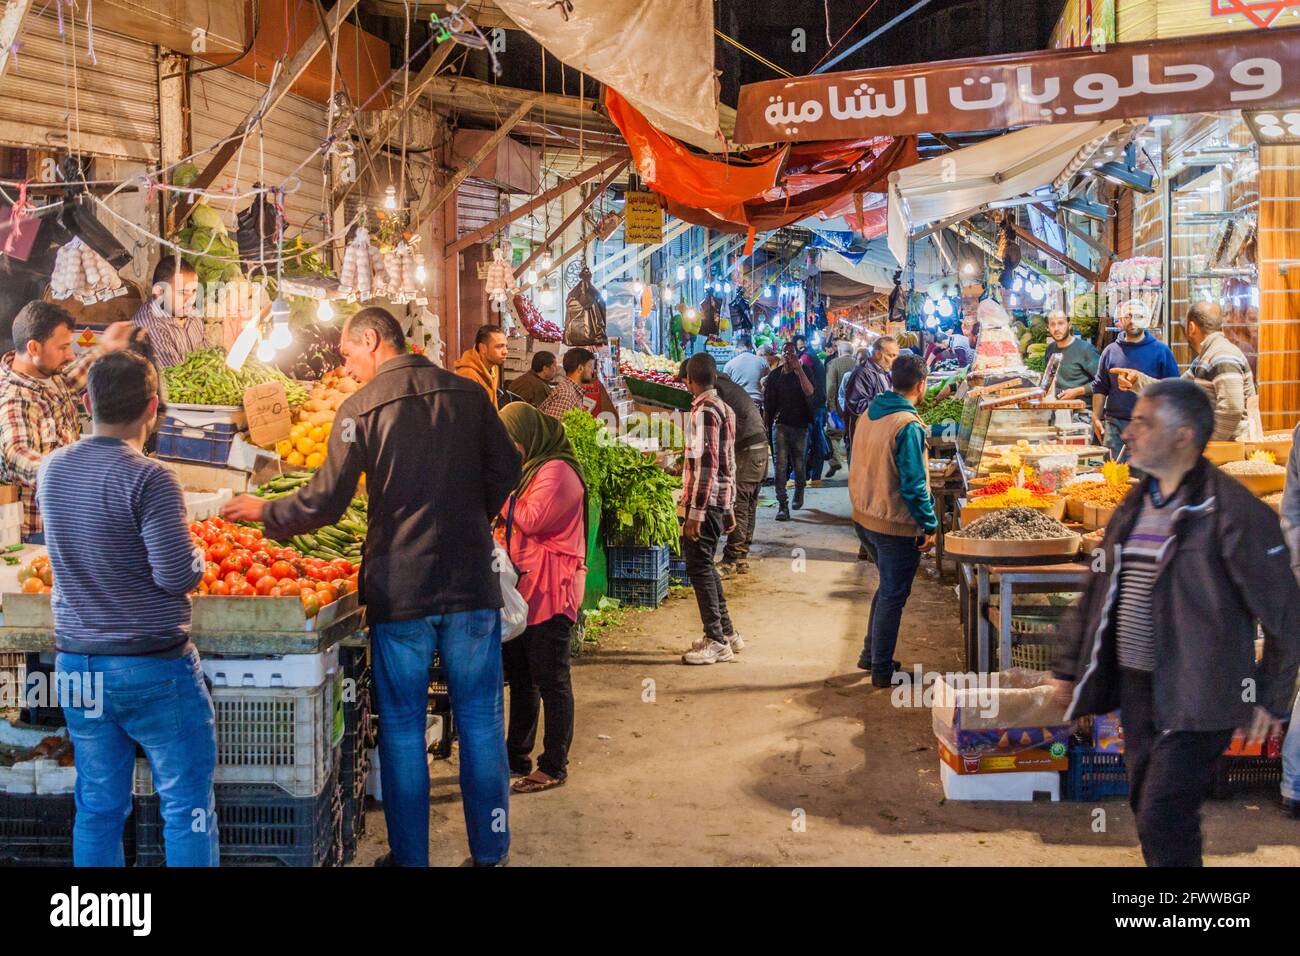 Jordan amman bazaar hi-res stock photography and images - Alamy